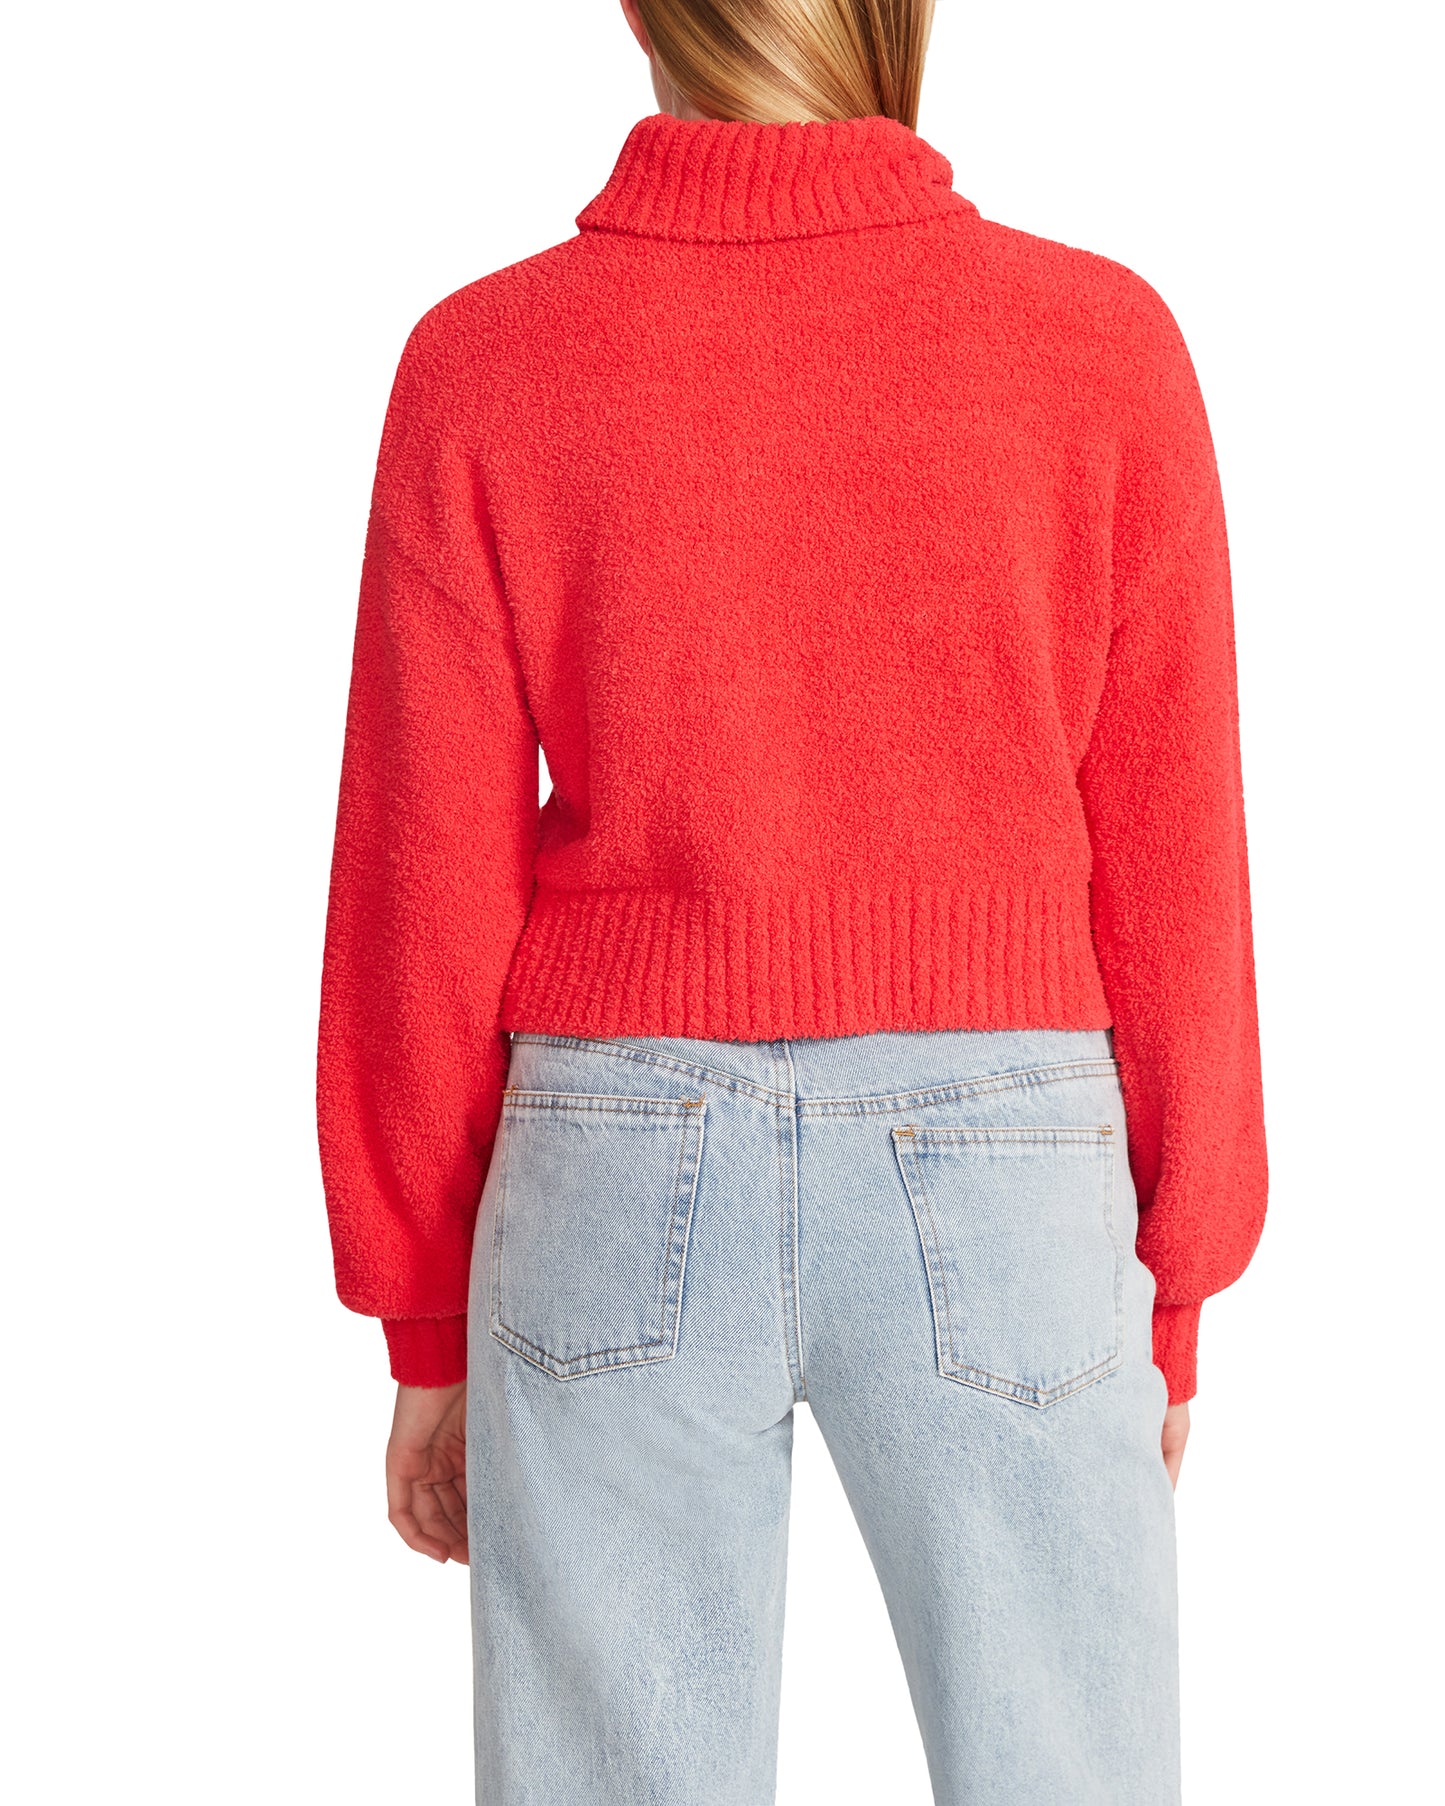 Gabbi Sweater